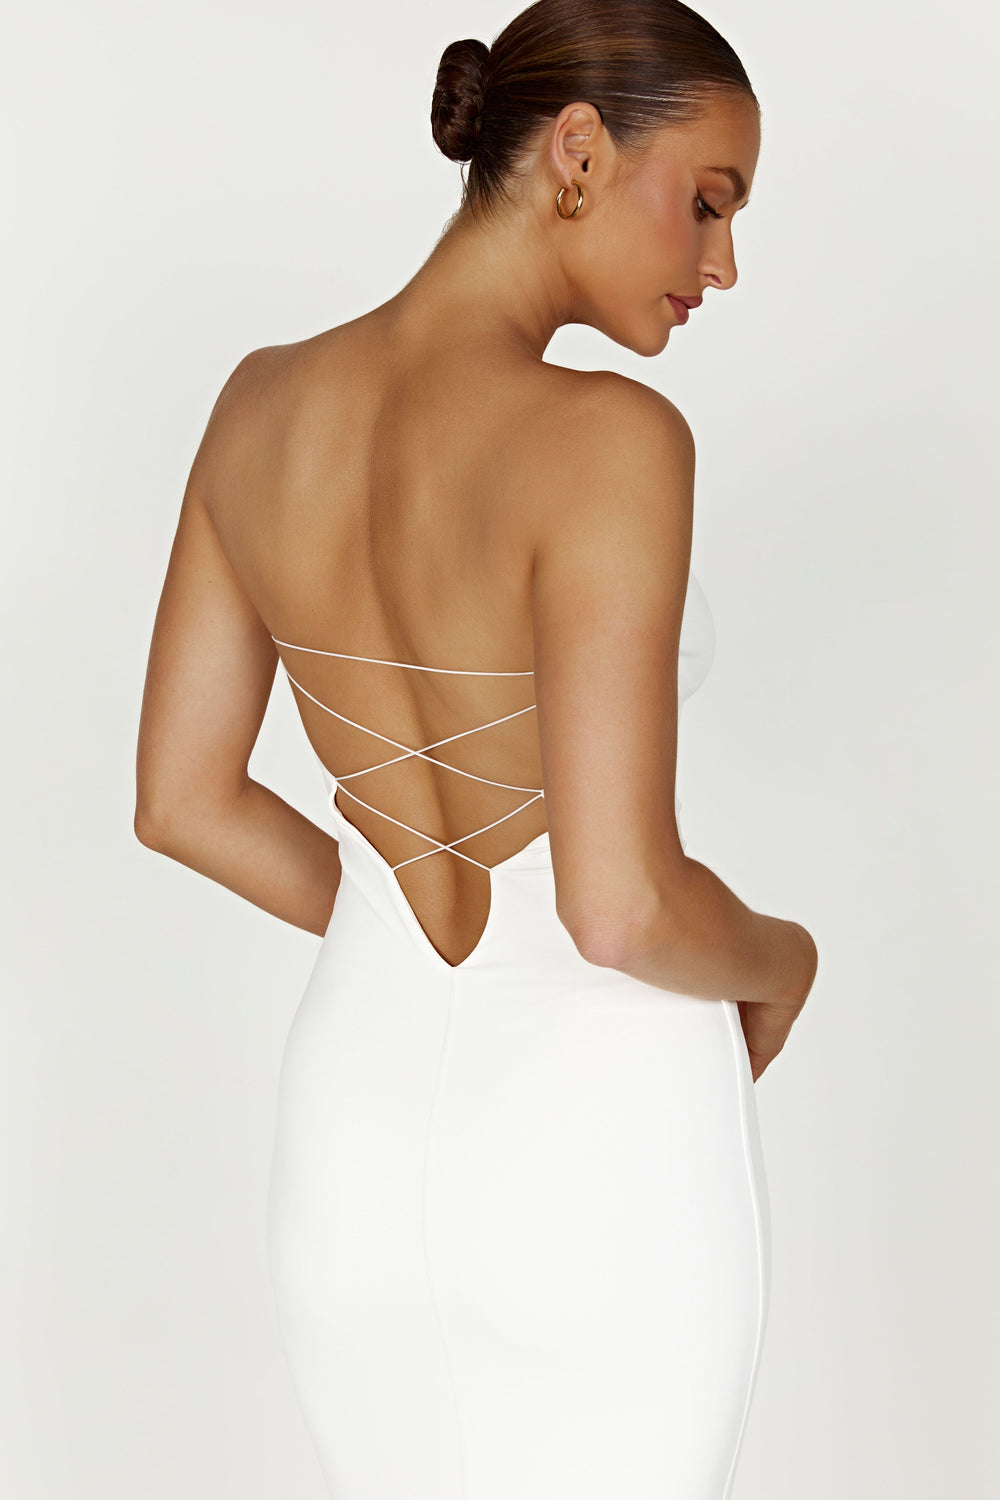 Vivian Recycled Nylon Strapless Tie Up Maxi Dress - White